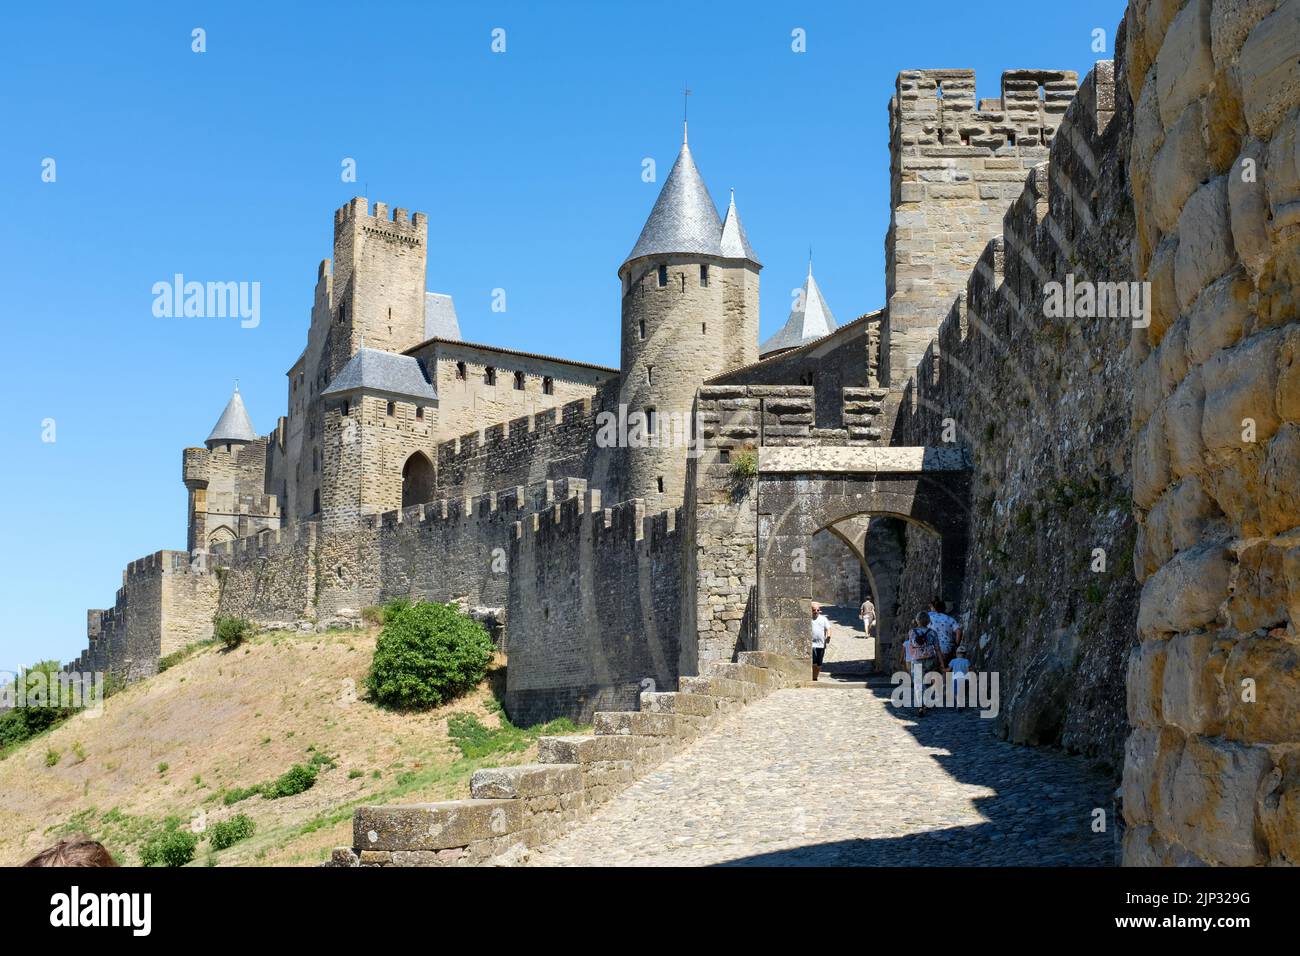 Citie de Carcassonne en France. Banque D'Images